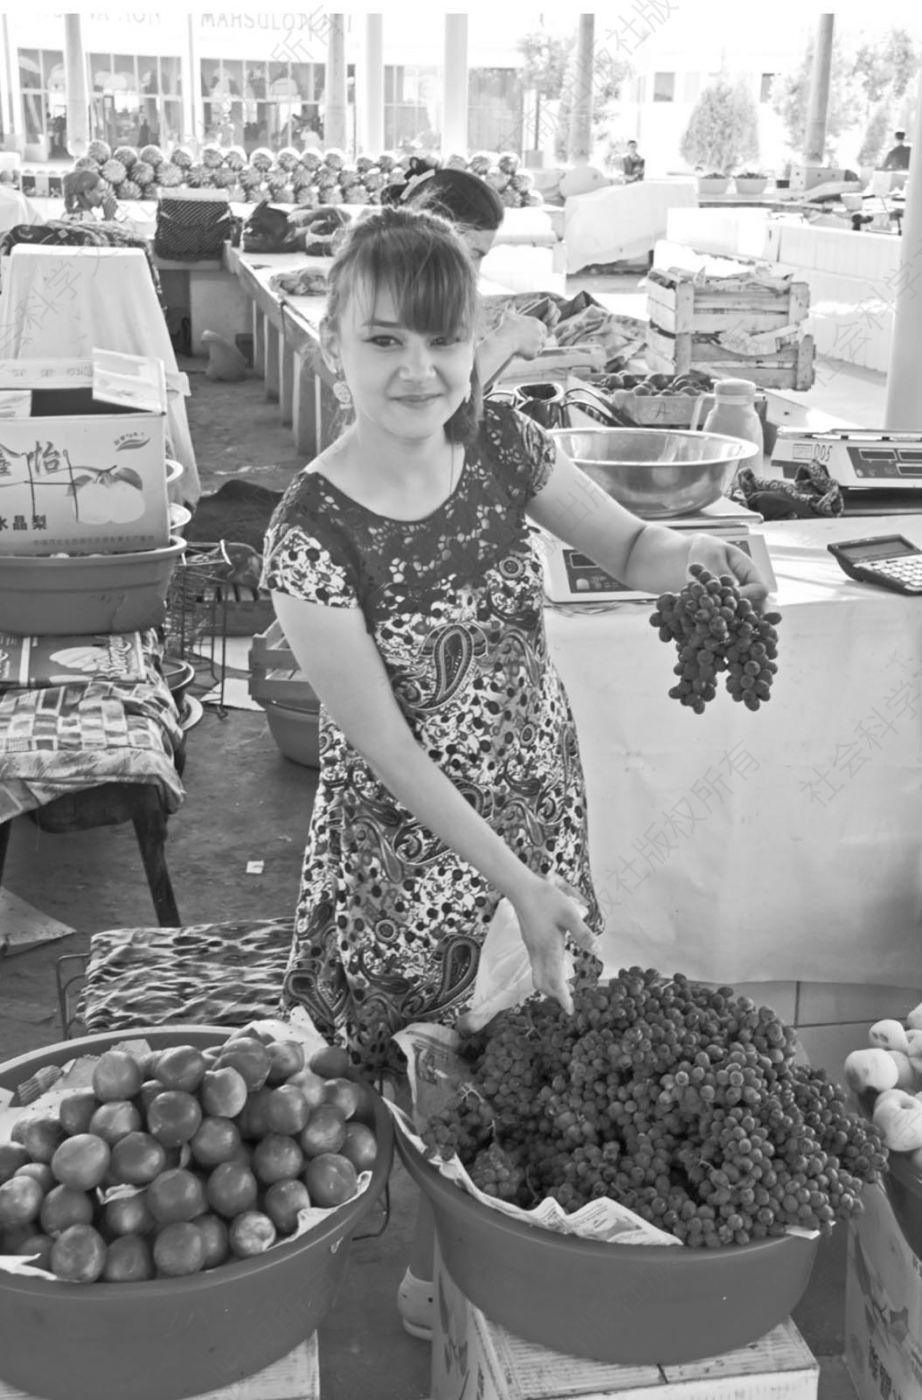 图22 2018年，一名年轻女孩在布哈拉集市上卖葡萄。她正在展示的是撒马尔罕当地的一个小葡萄品种。今天的中亚拥有数百个地方葡萄品种。每个农产品市场都有许多特色品种，每一种葡萄都有自己独特的风味和质地